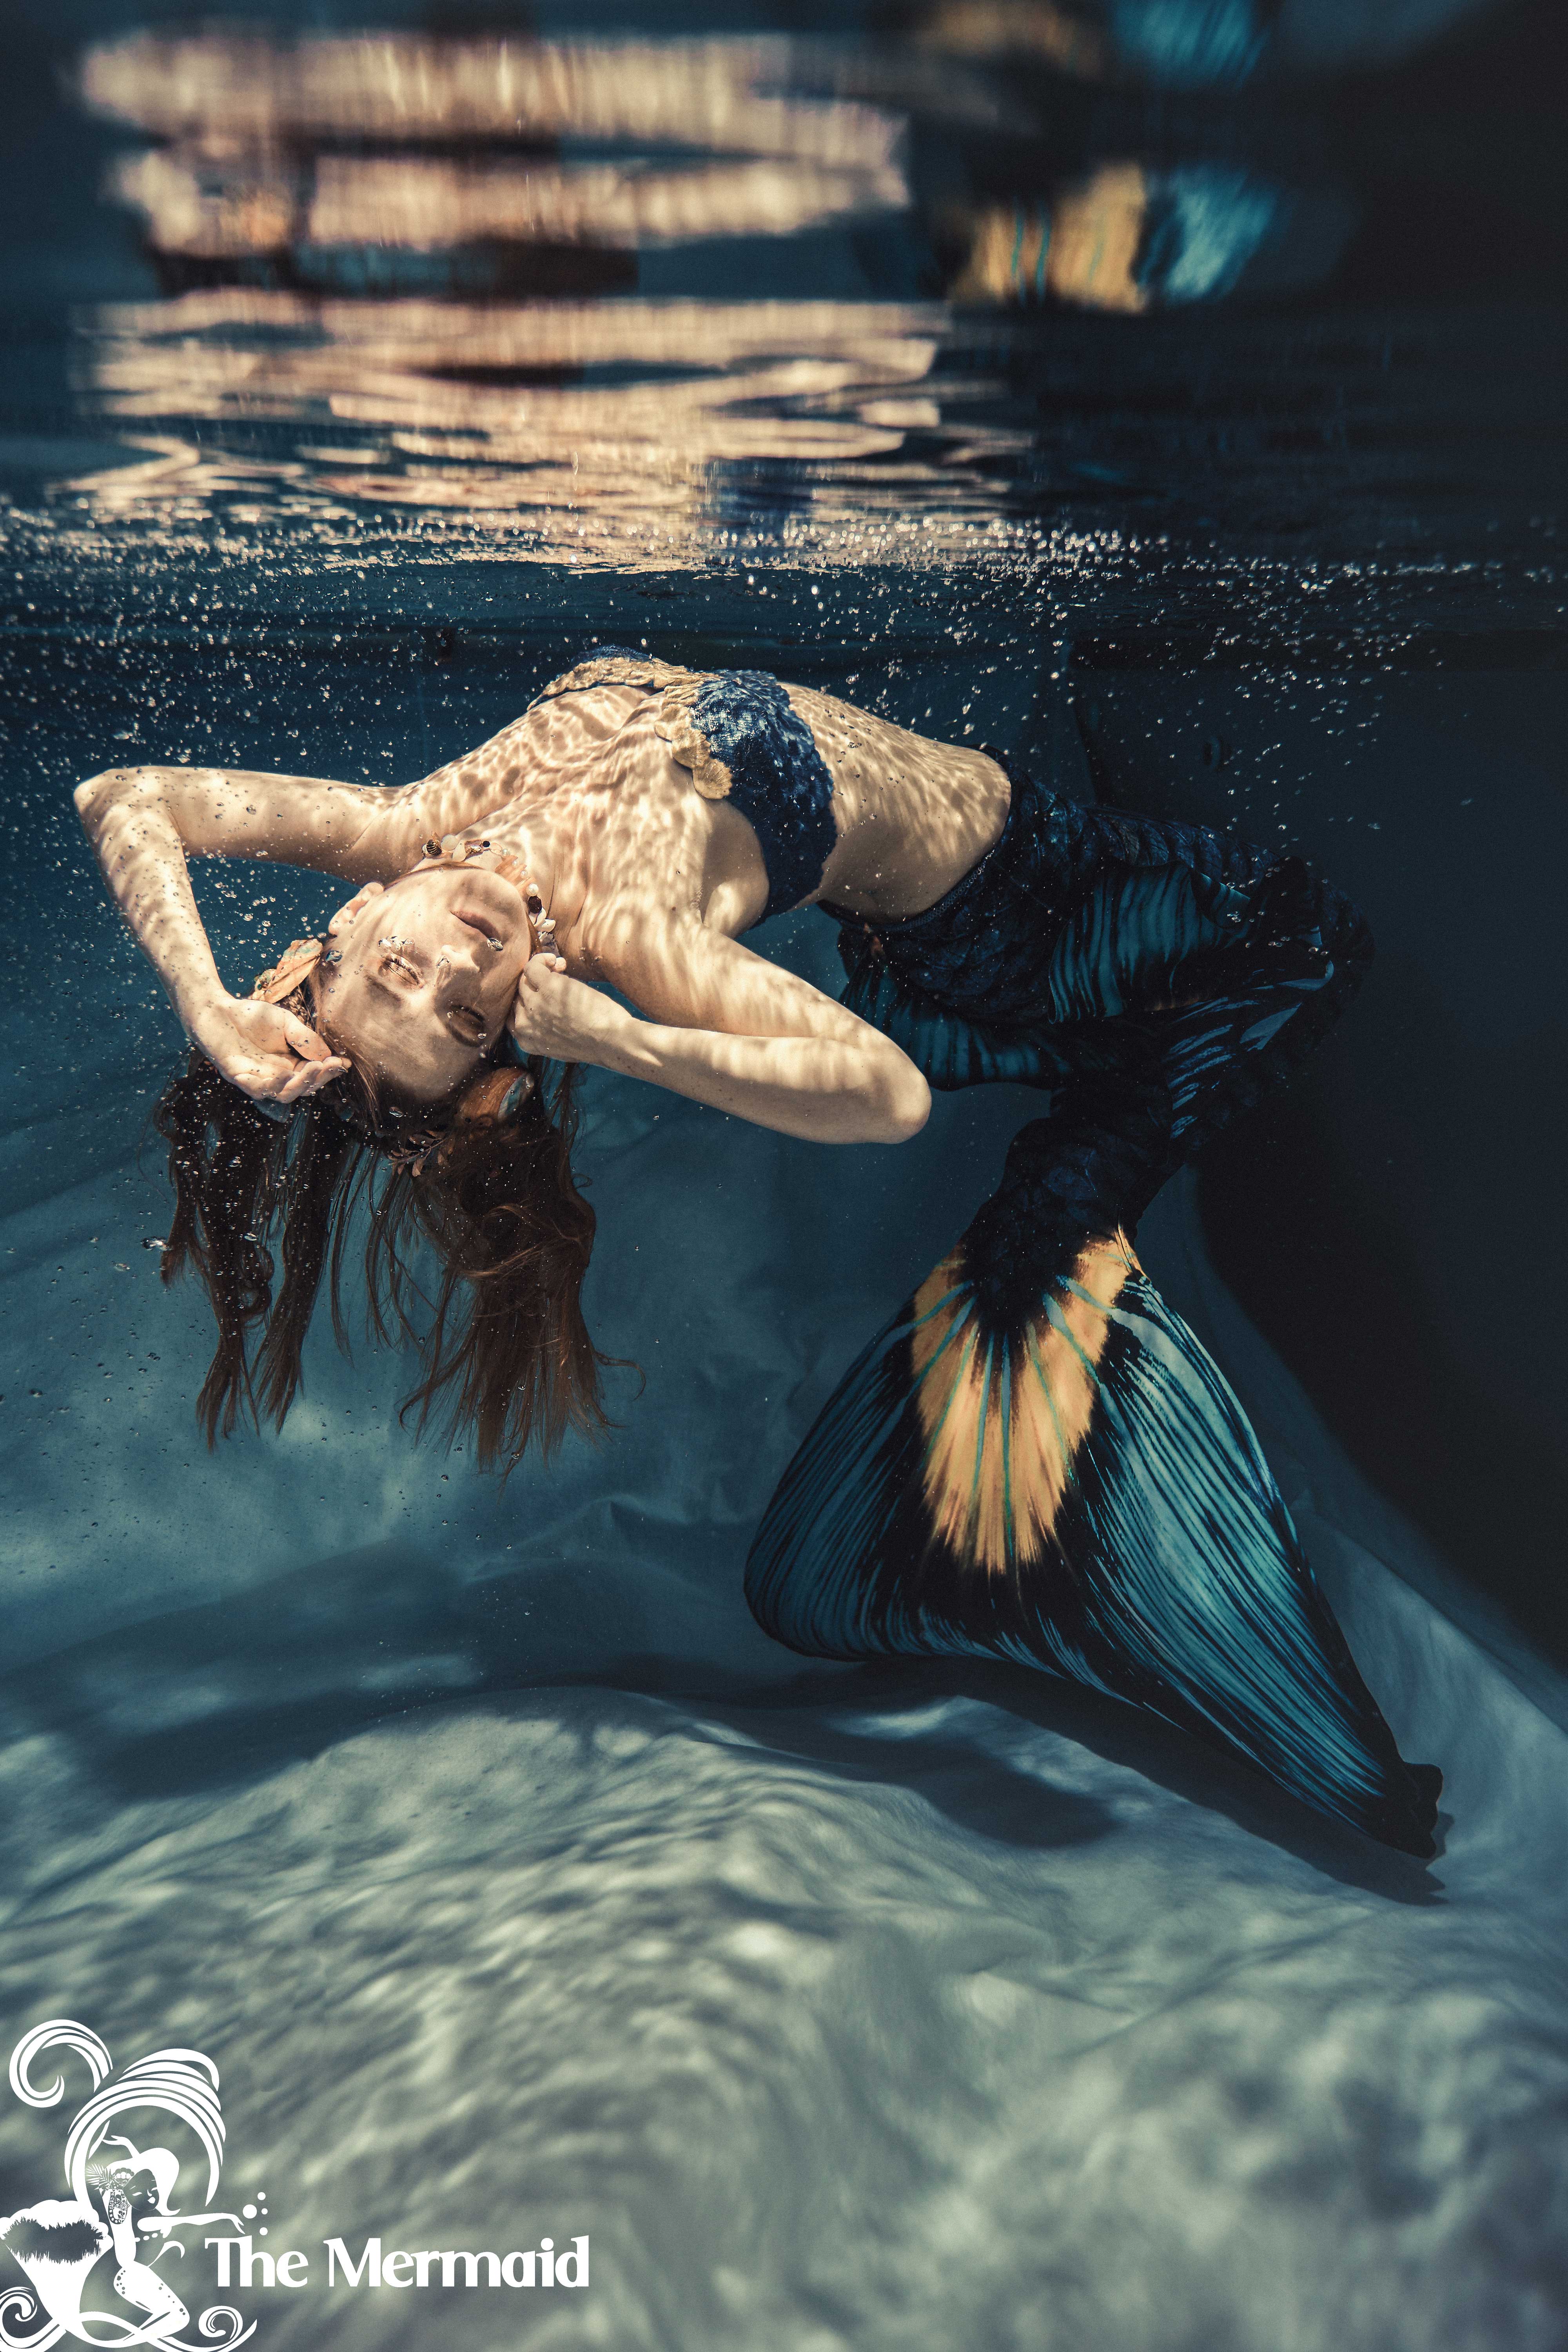 The Mermaid beim Meerjungfrauenschwimmen